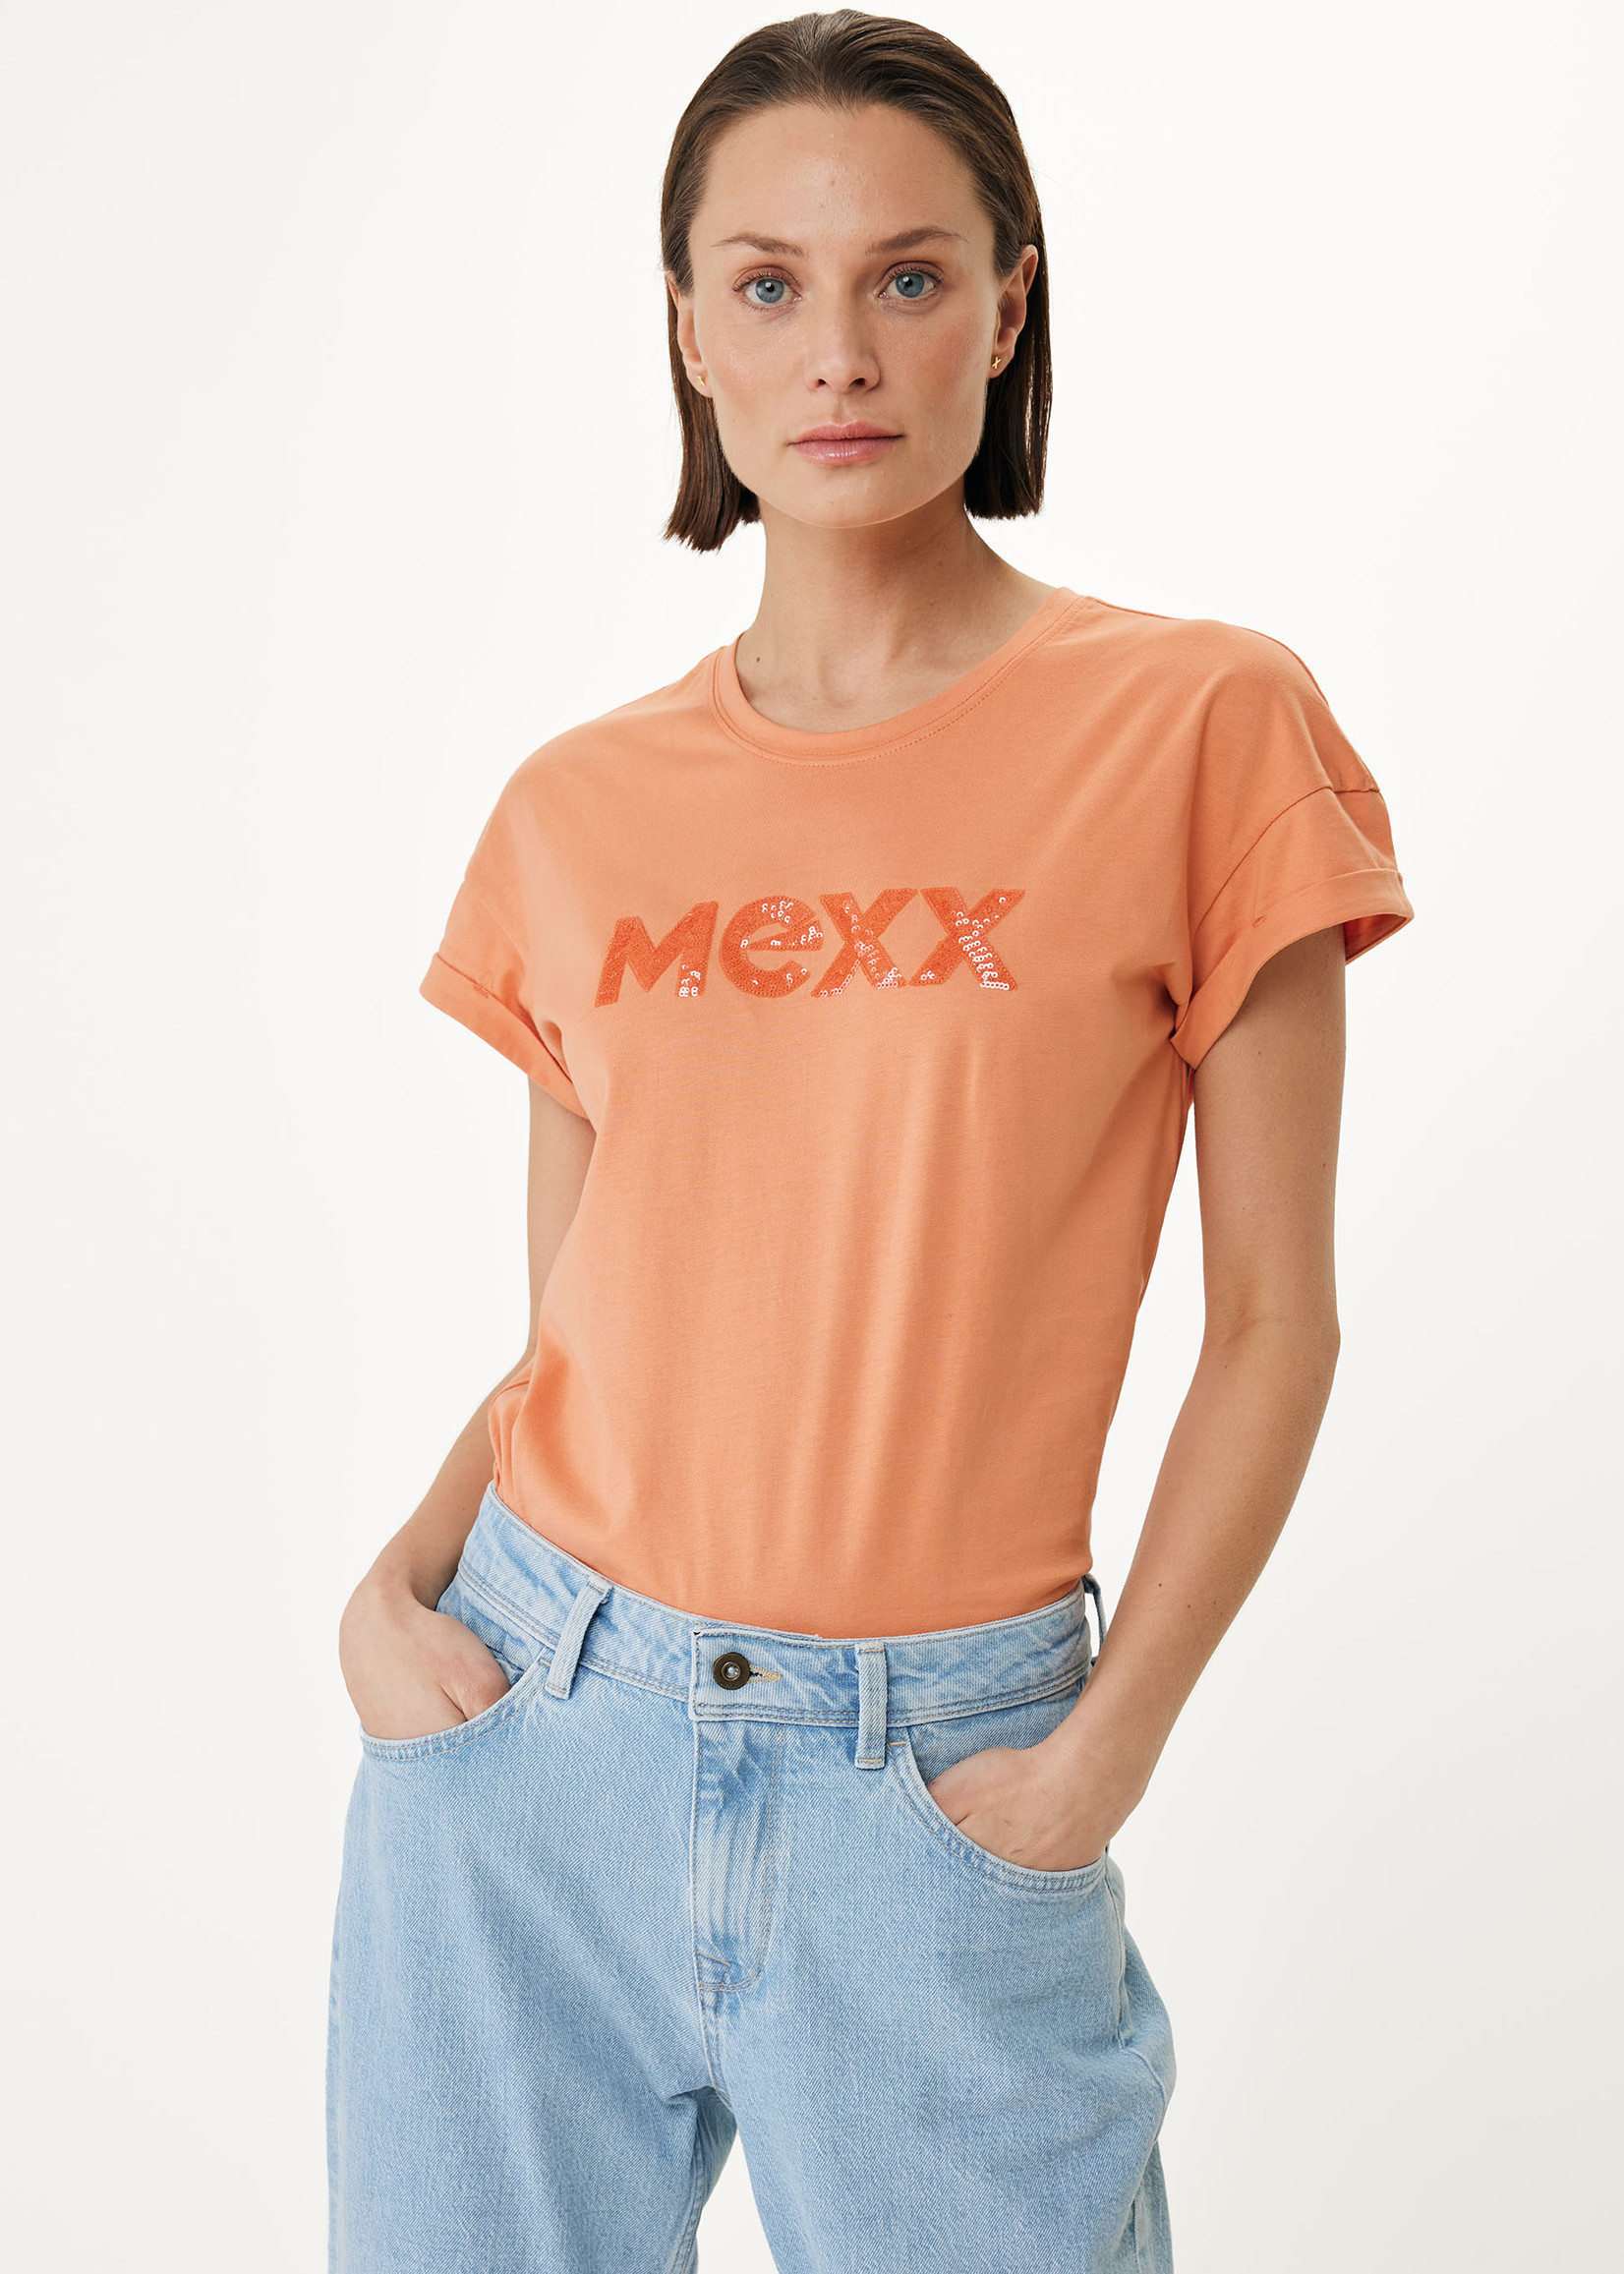 Mexx Oversized Tee - Orange